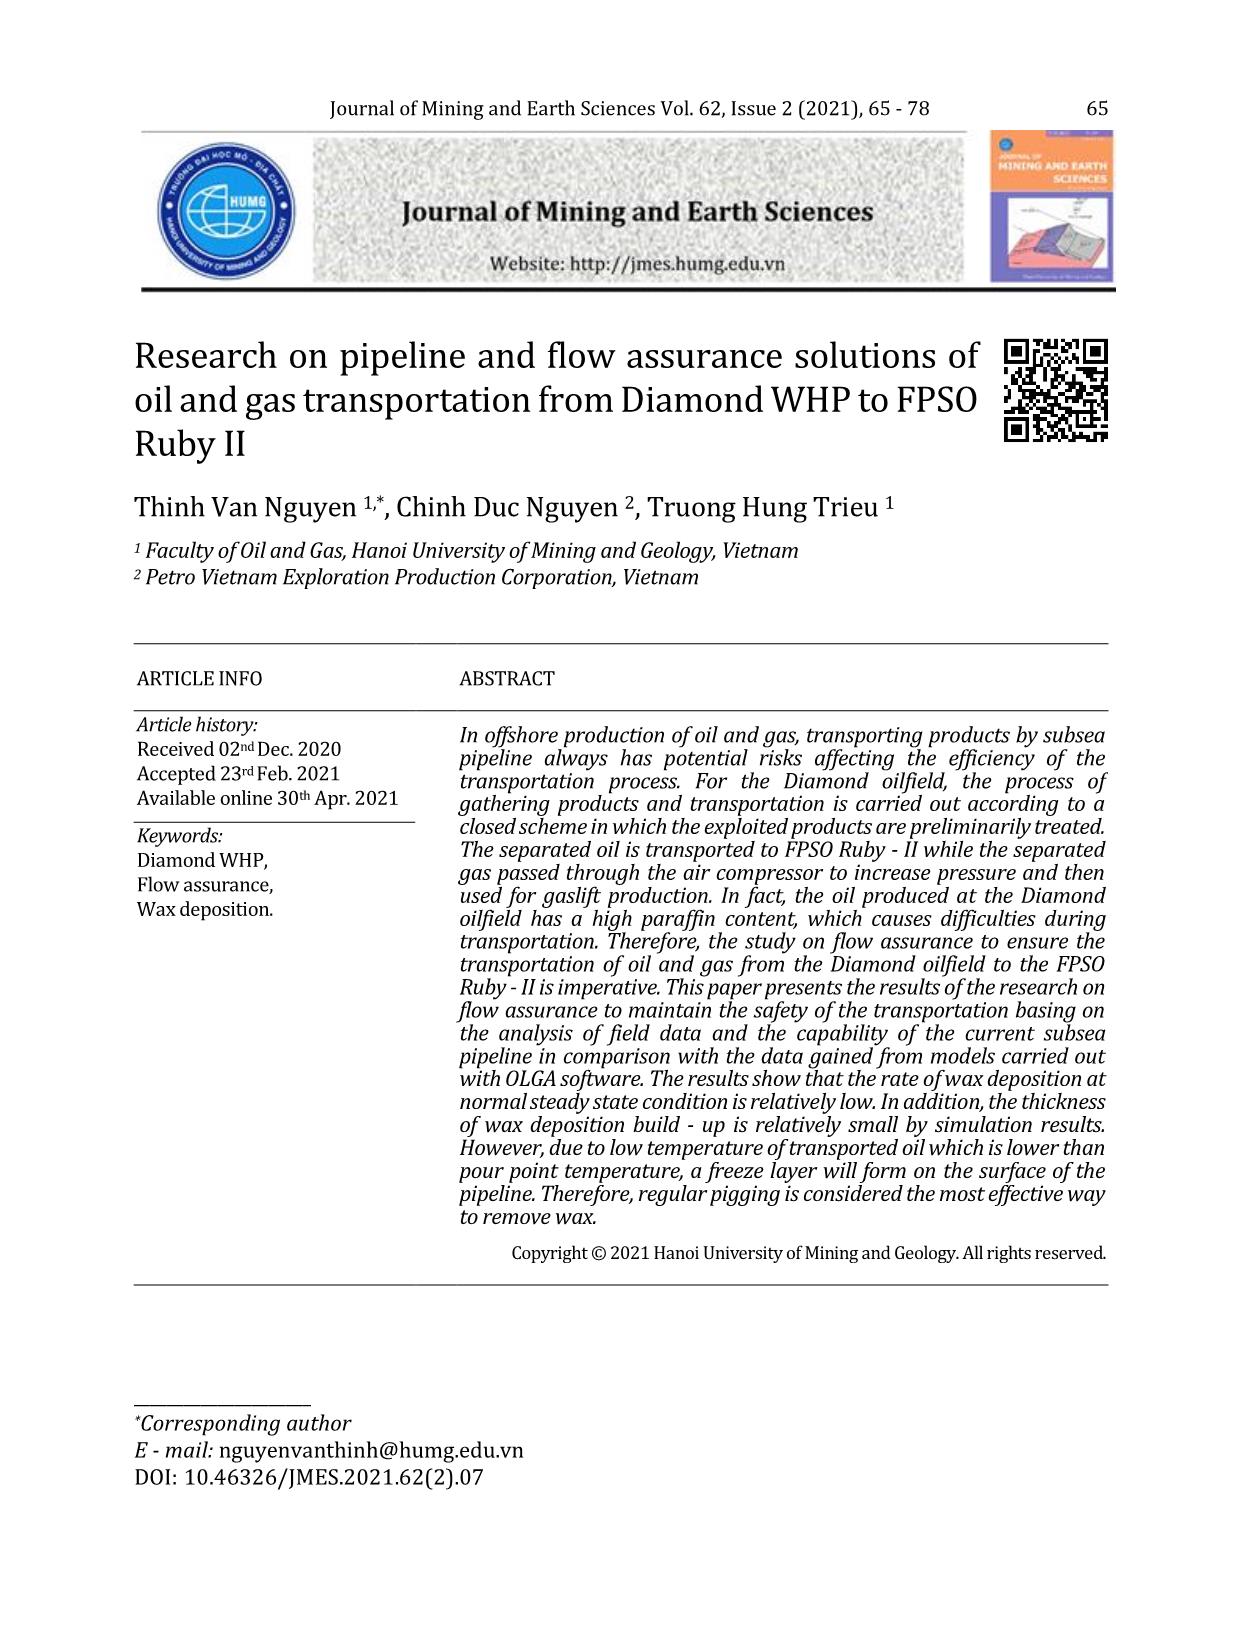 Nghiên cứu giải pháp đảm bảo dòng chảy cho tuyến ống vận chuyển hỗn hợp dầu khí từ giàn Diamond về tàu FPSO Ruby - II trang 1